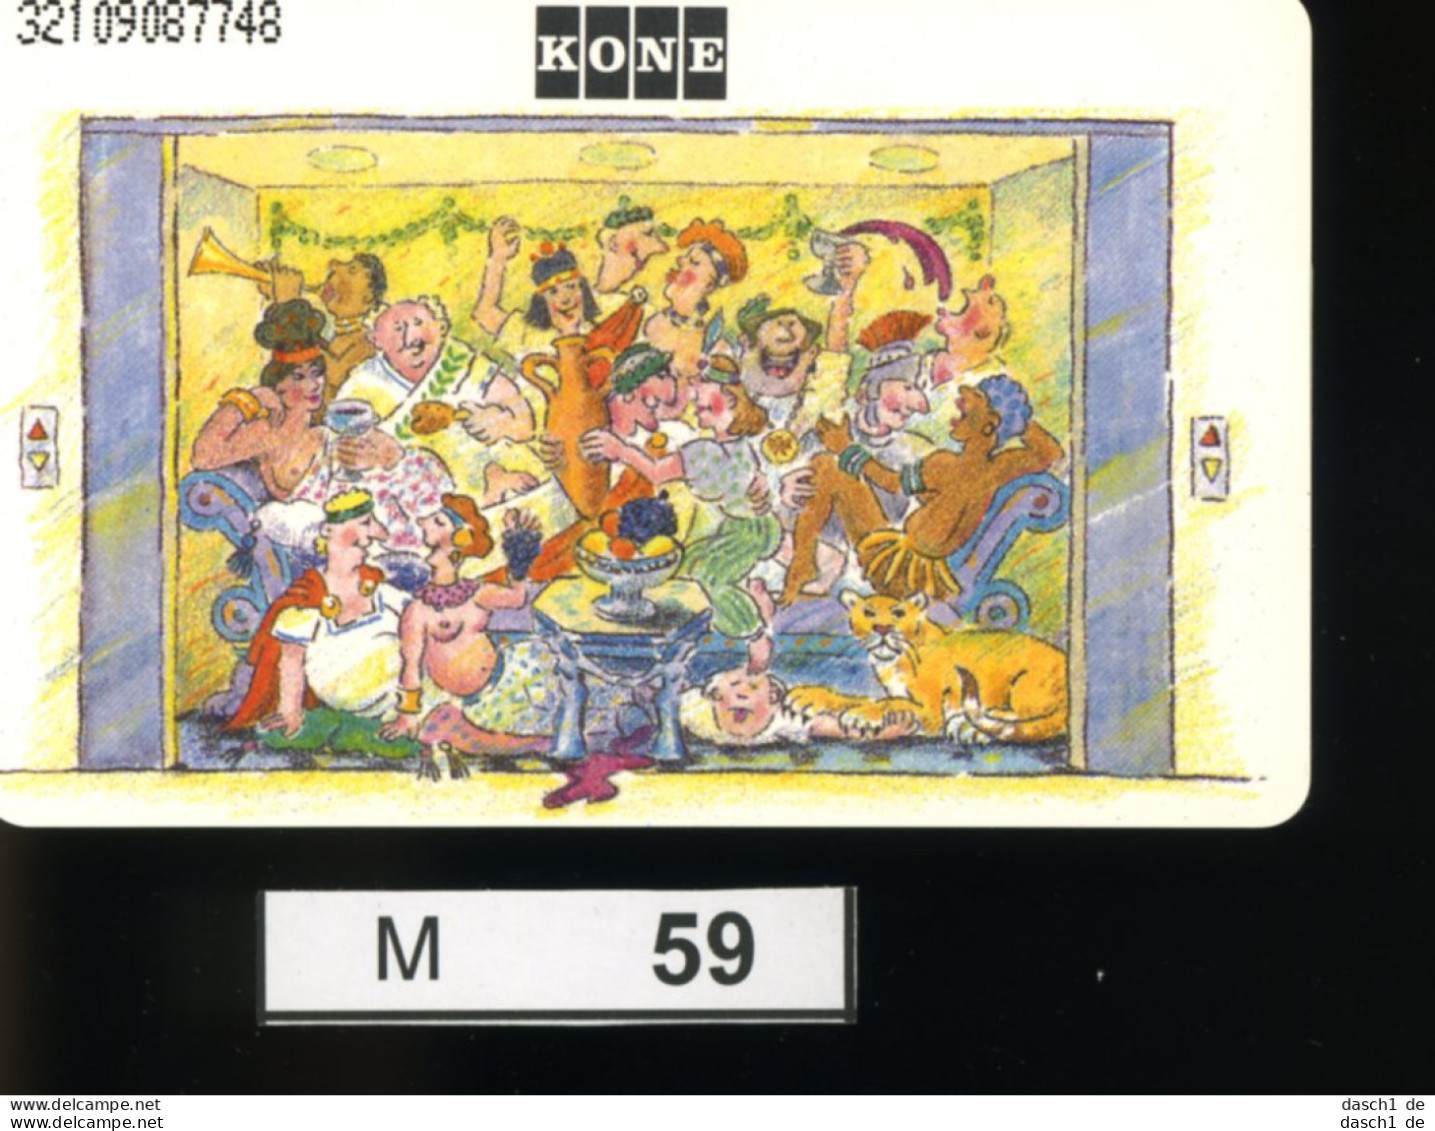 M059, Deutschland, TK, Sonderkarte Kone Aufzug, 12 DM, 1992 - K-Series : Serie Clientes